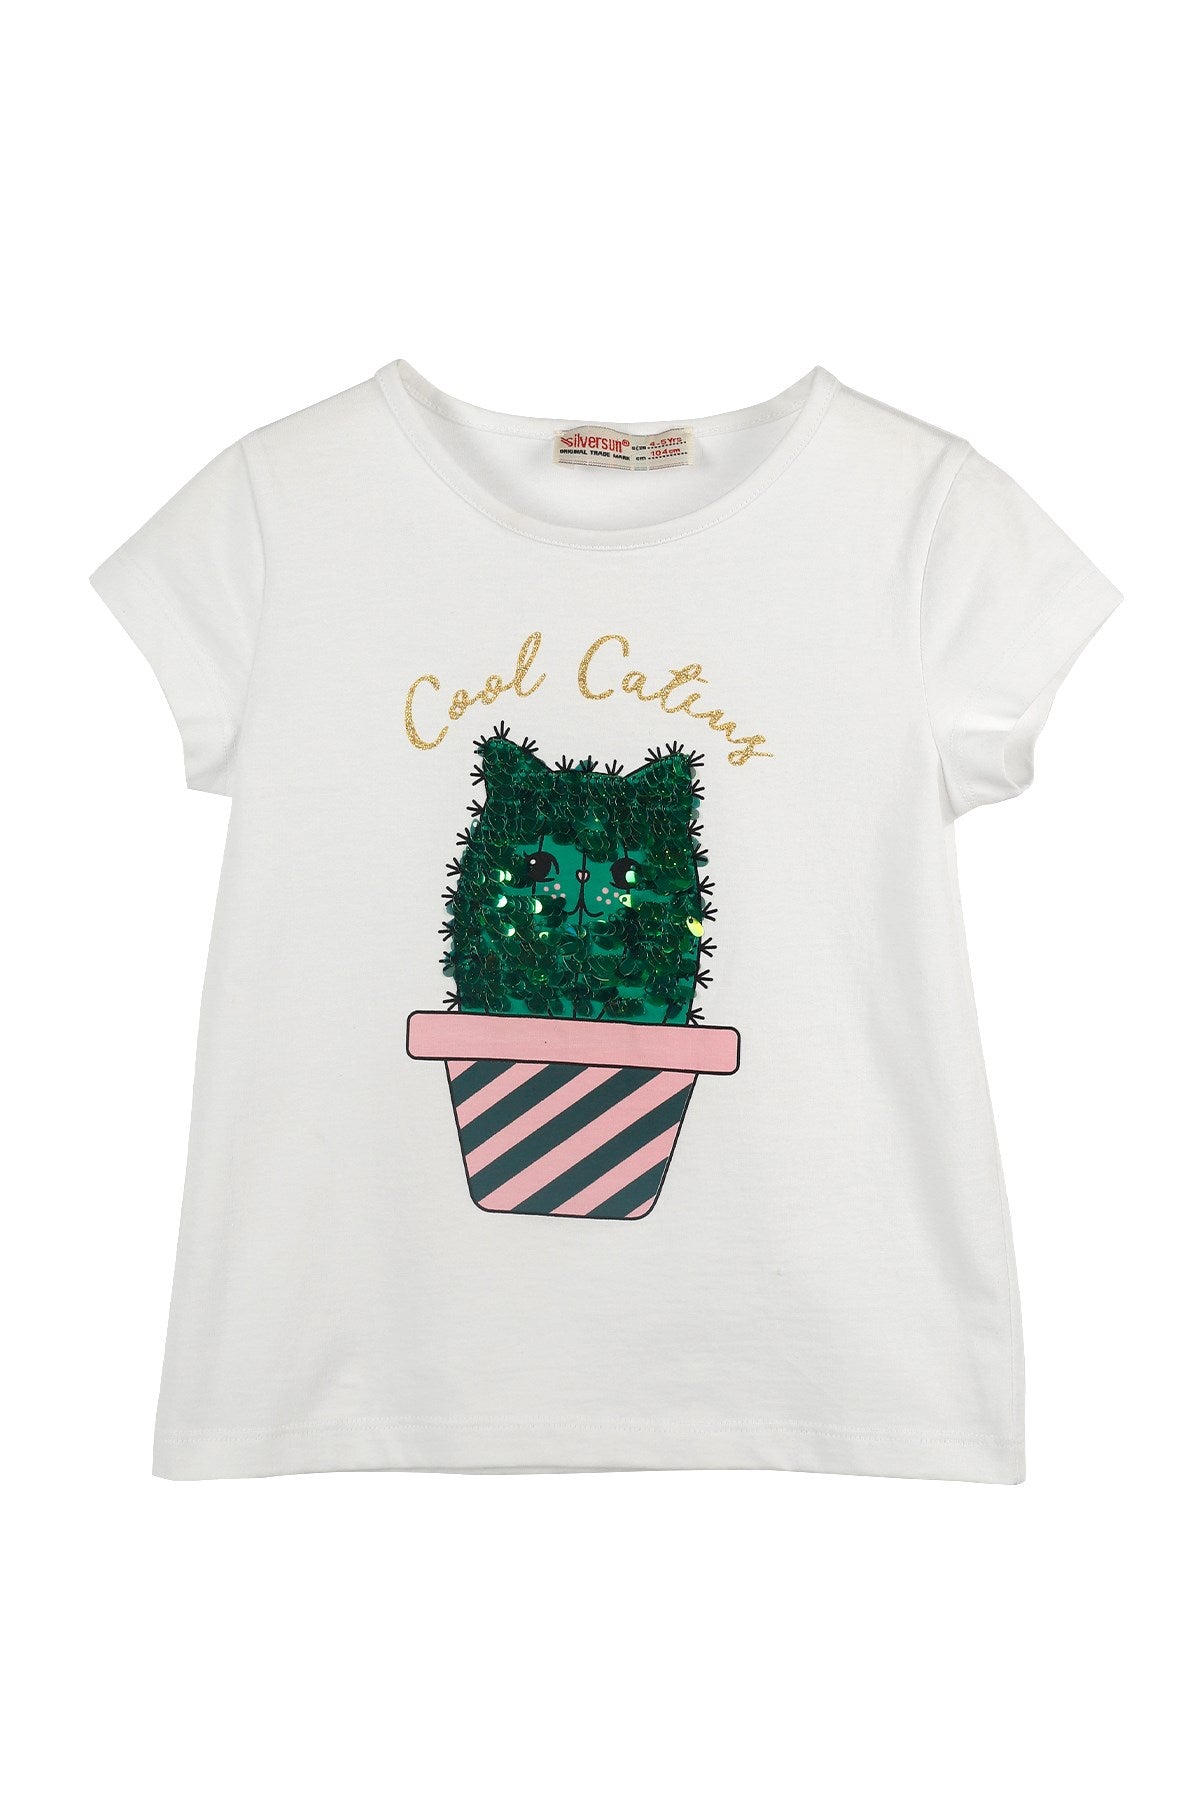 Cool Cactus Girls T-shirt - Cool Cactus Girls T-shirt - 2 Years - Silversun - Melymod